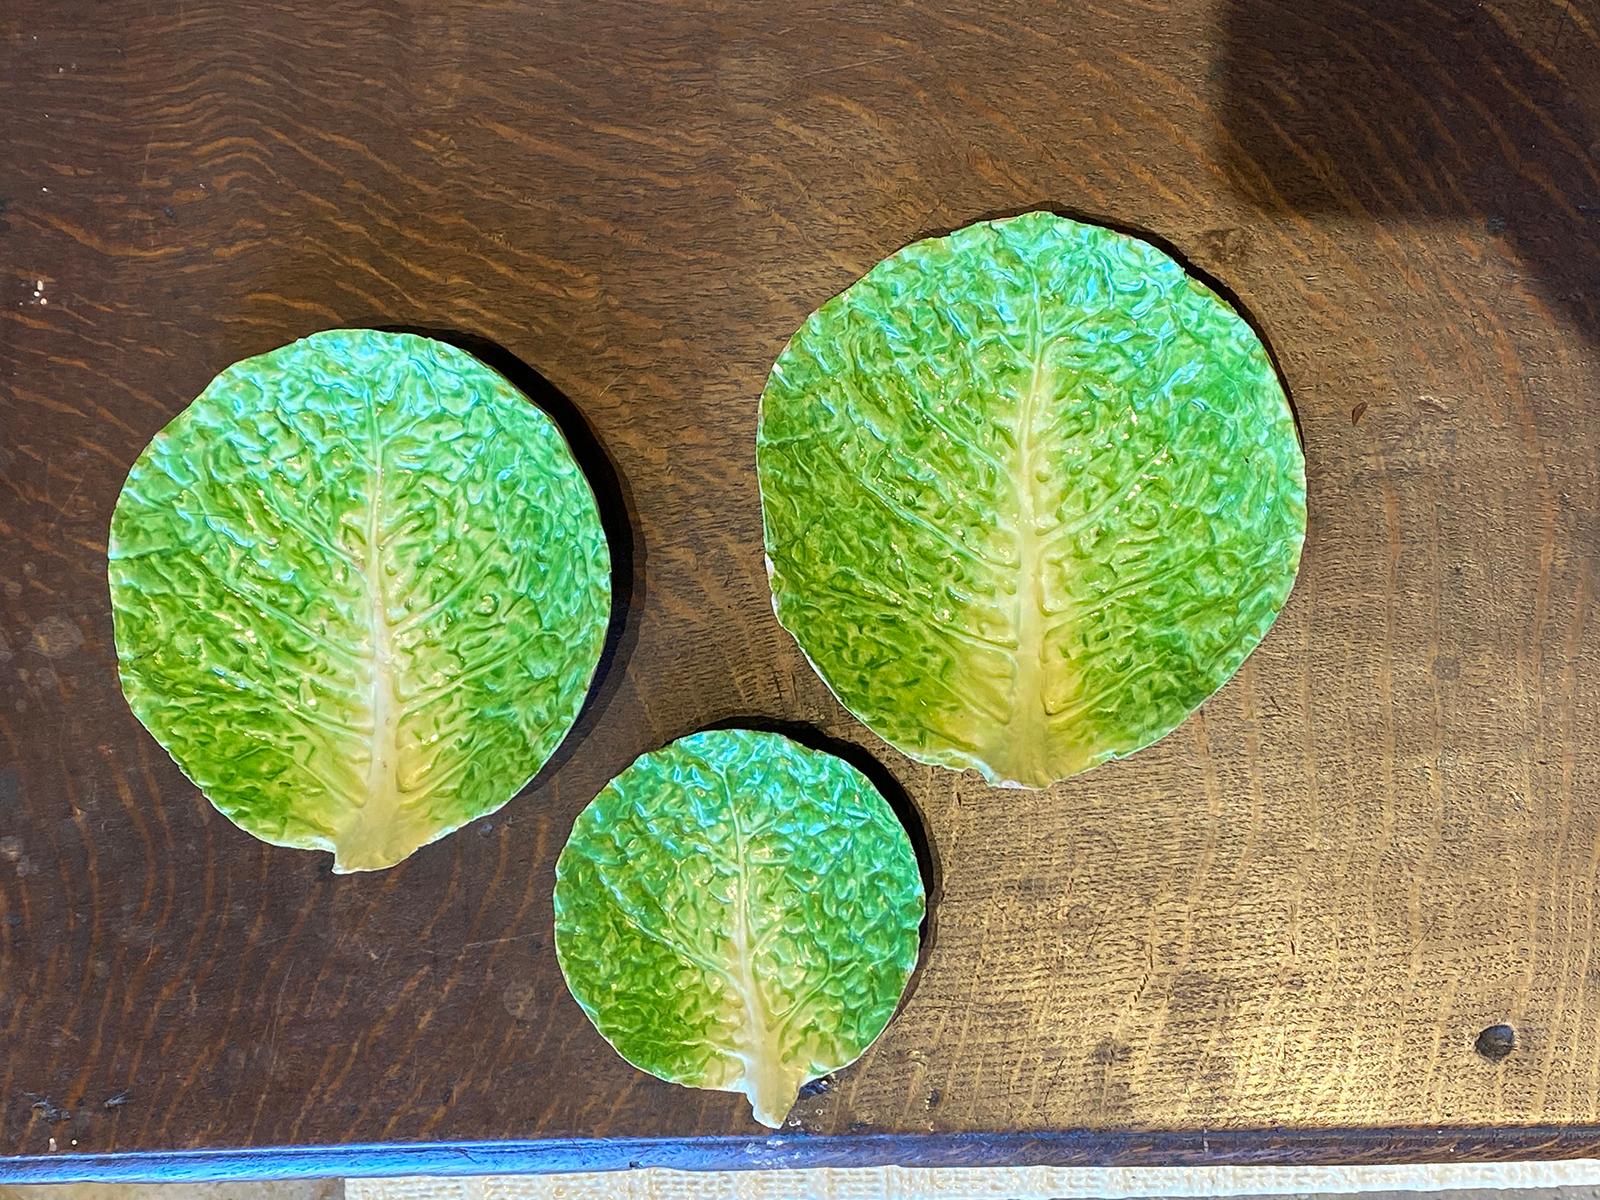 Set of three 19th-20th century Italian Majolica Napoli green lettuceware / cabbage ceramic plates, unmarked.
Two measure 6.5